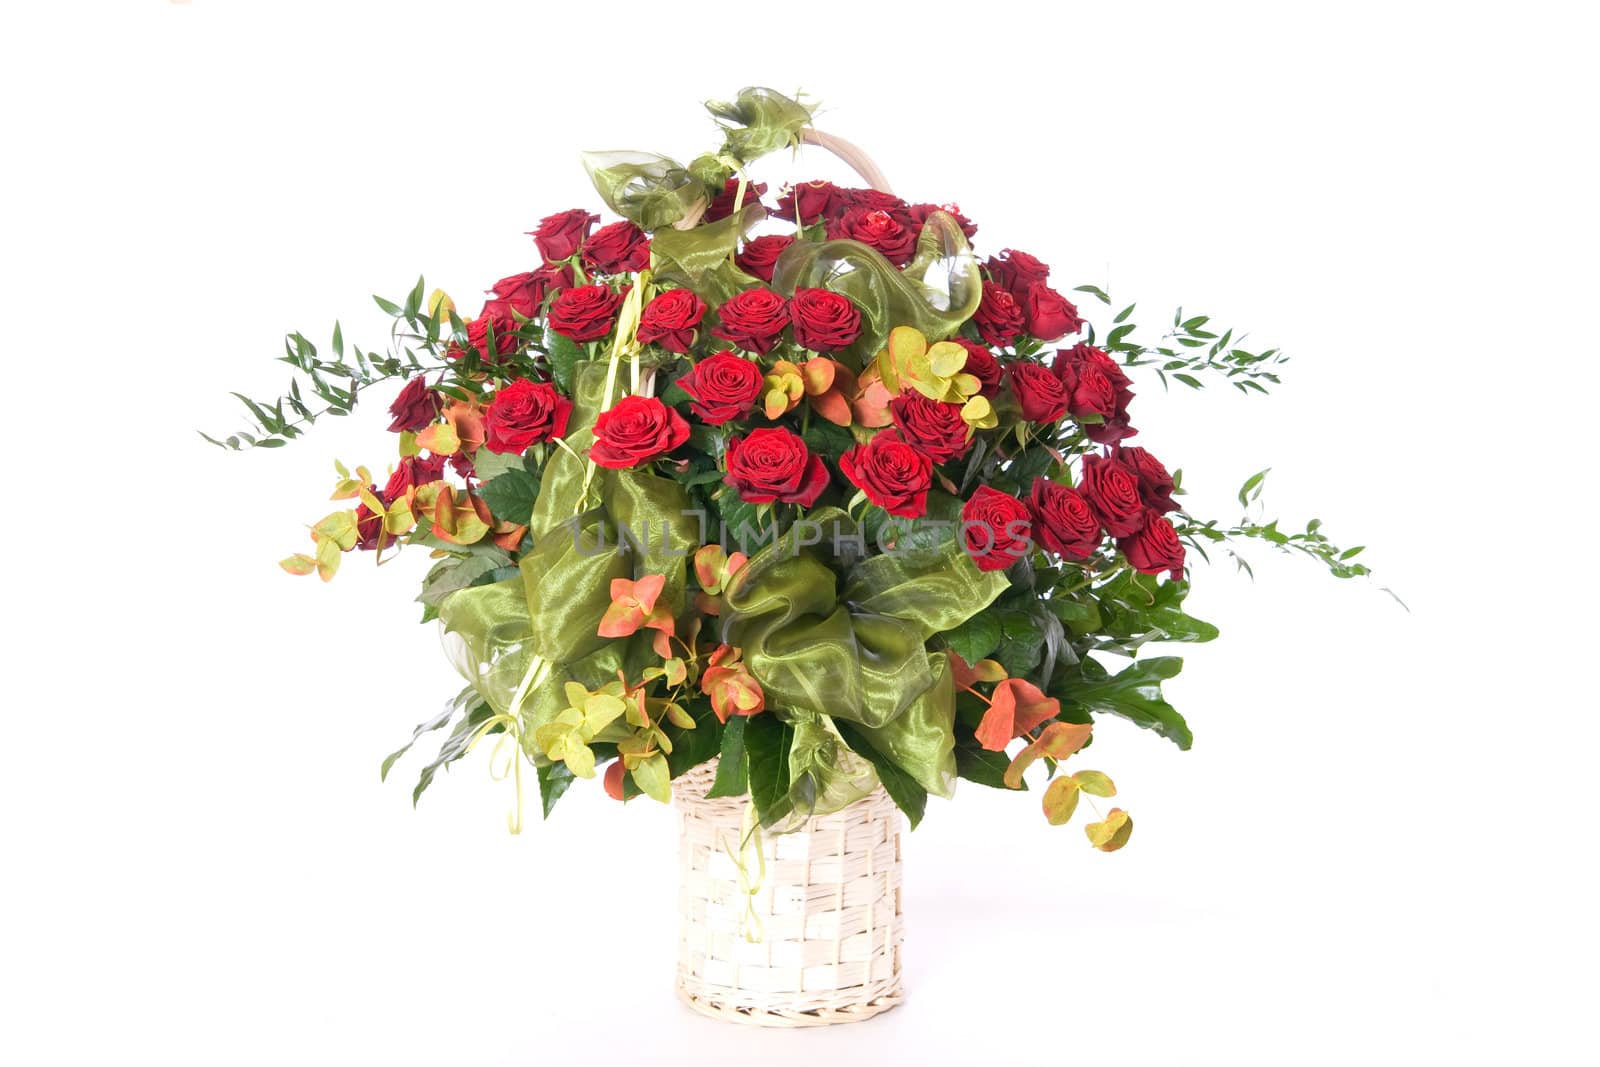 Big basket full of beautiful red roses